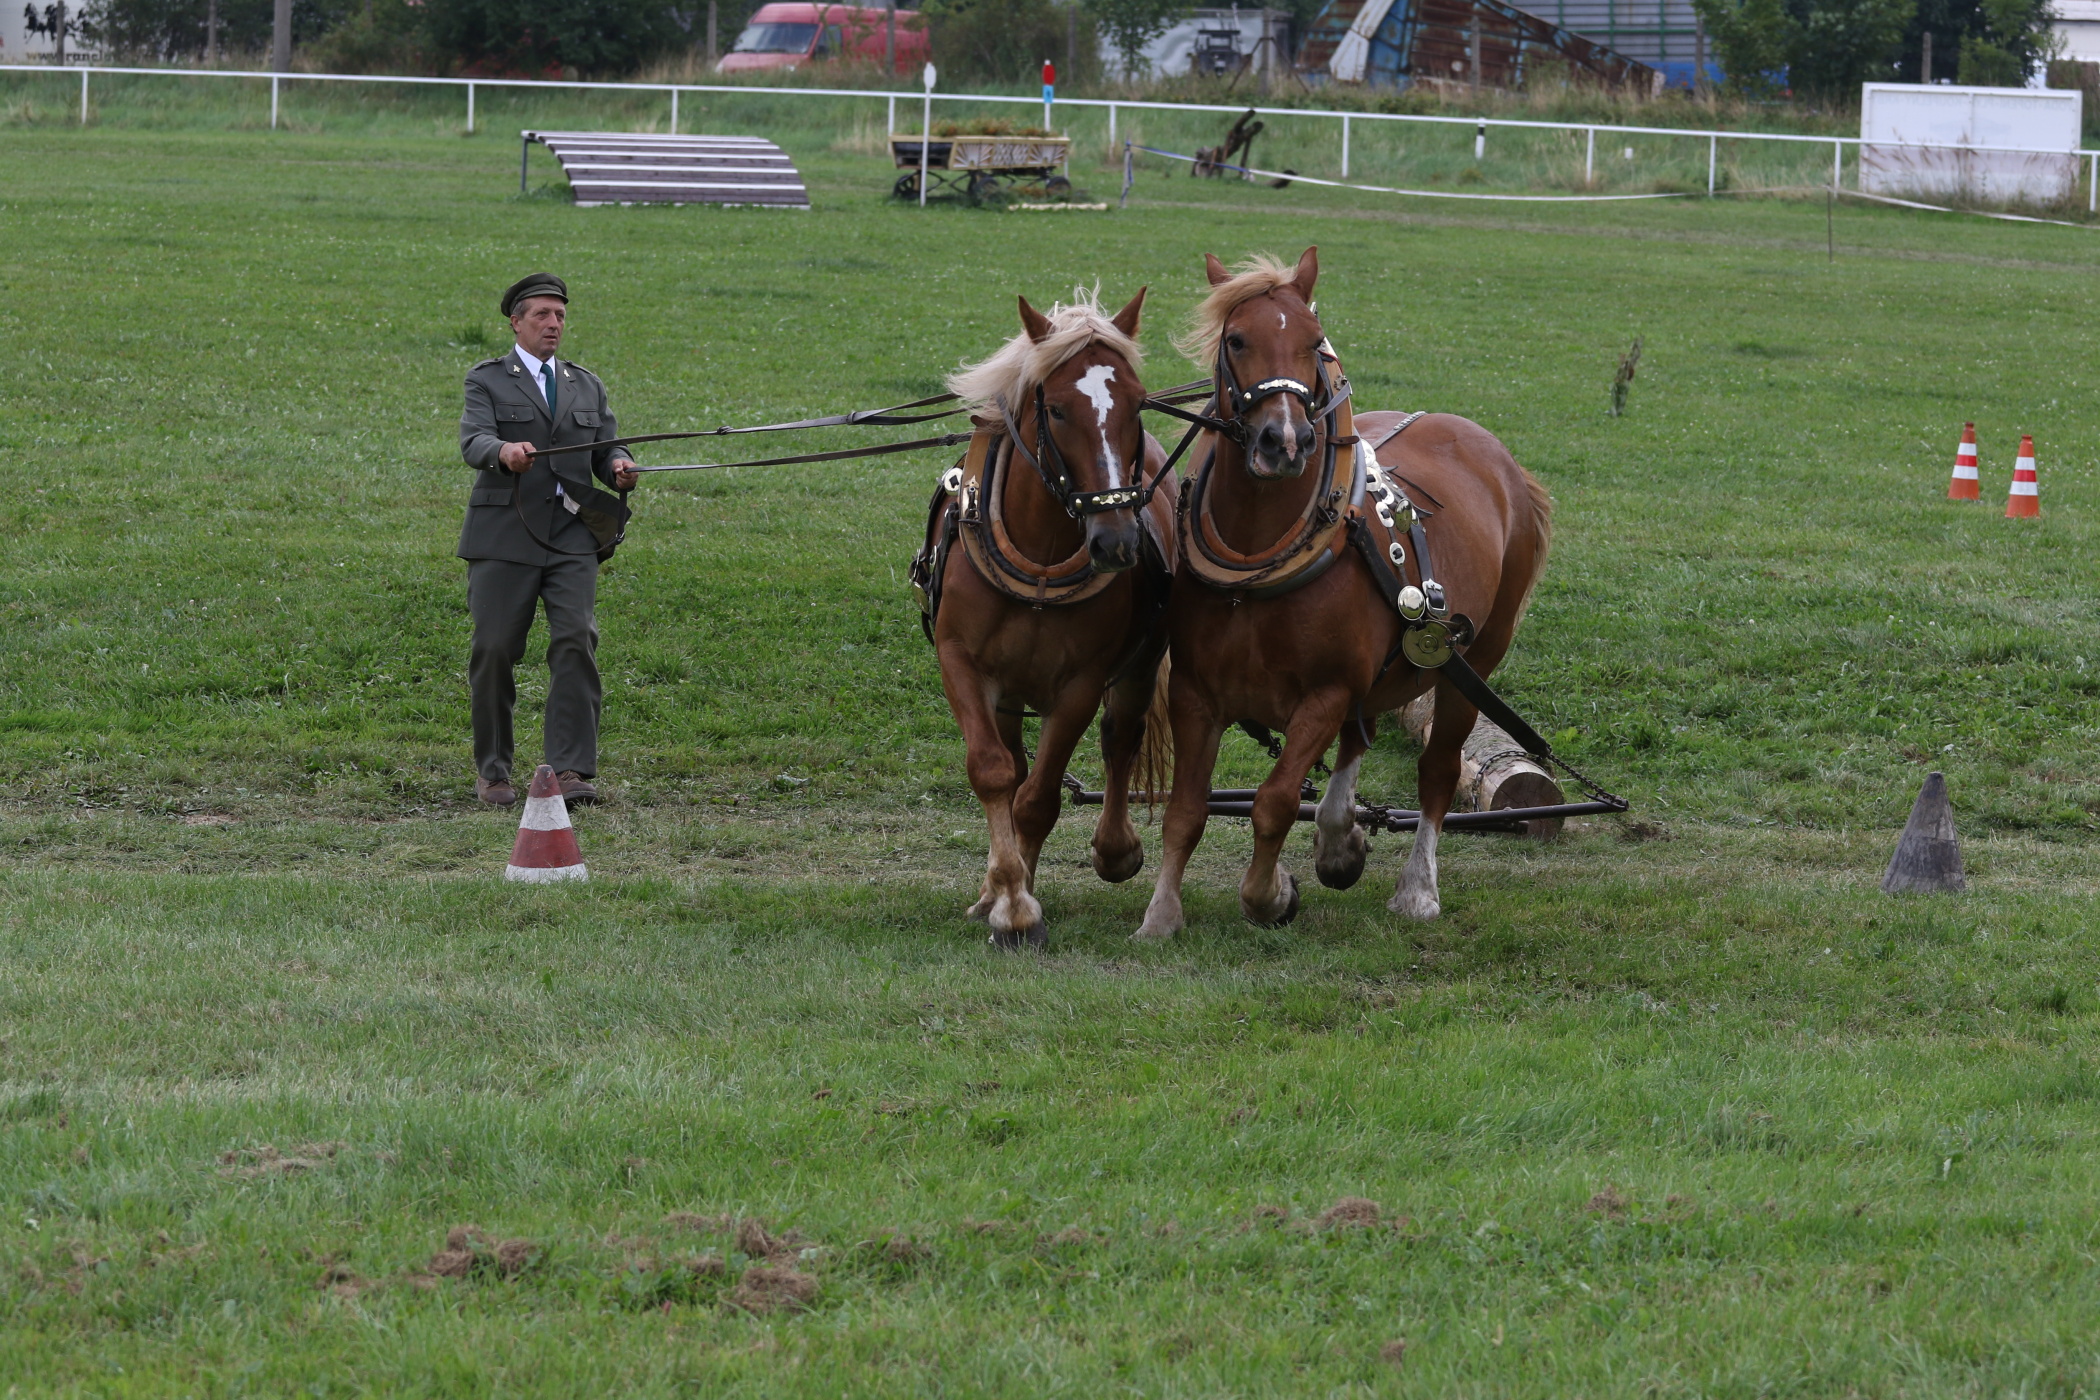 Chladnokrevní koně ZP 2017 (foto M. Kopecký)